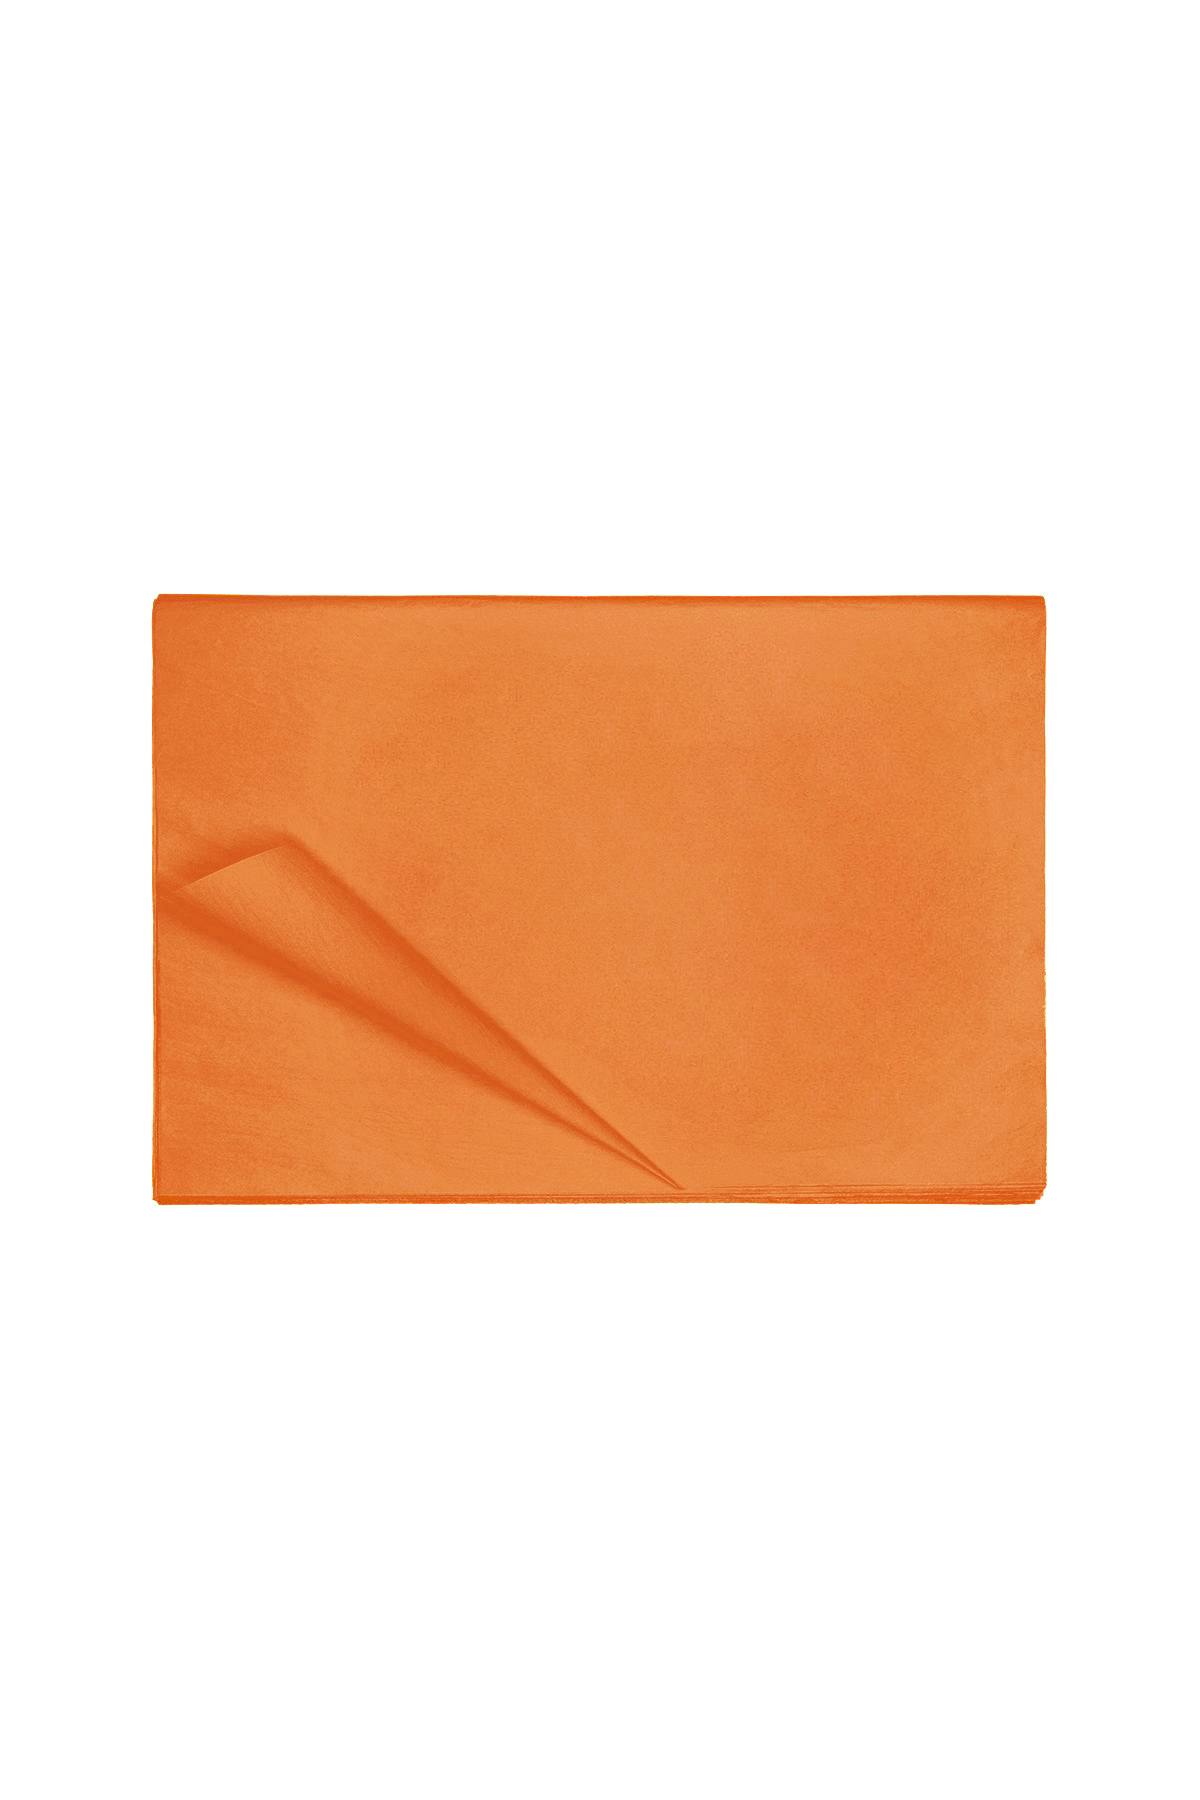 Tissue paper small Orange 